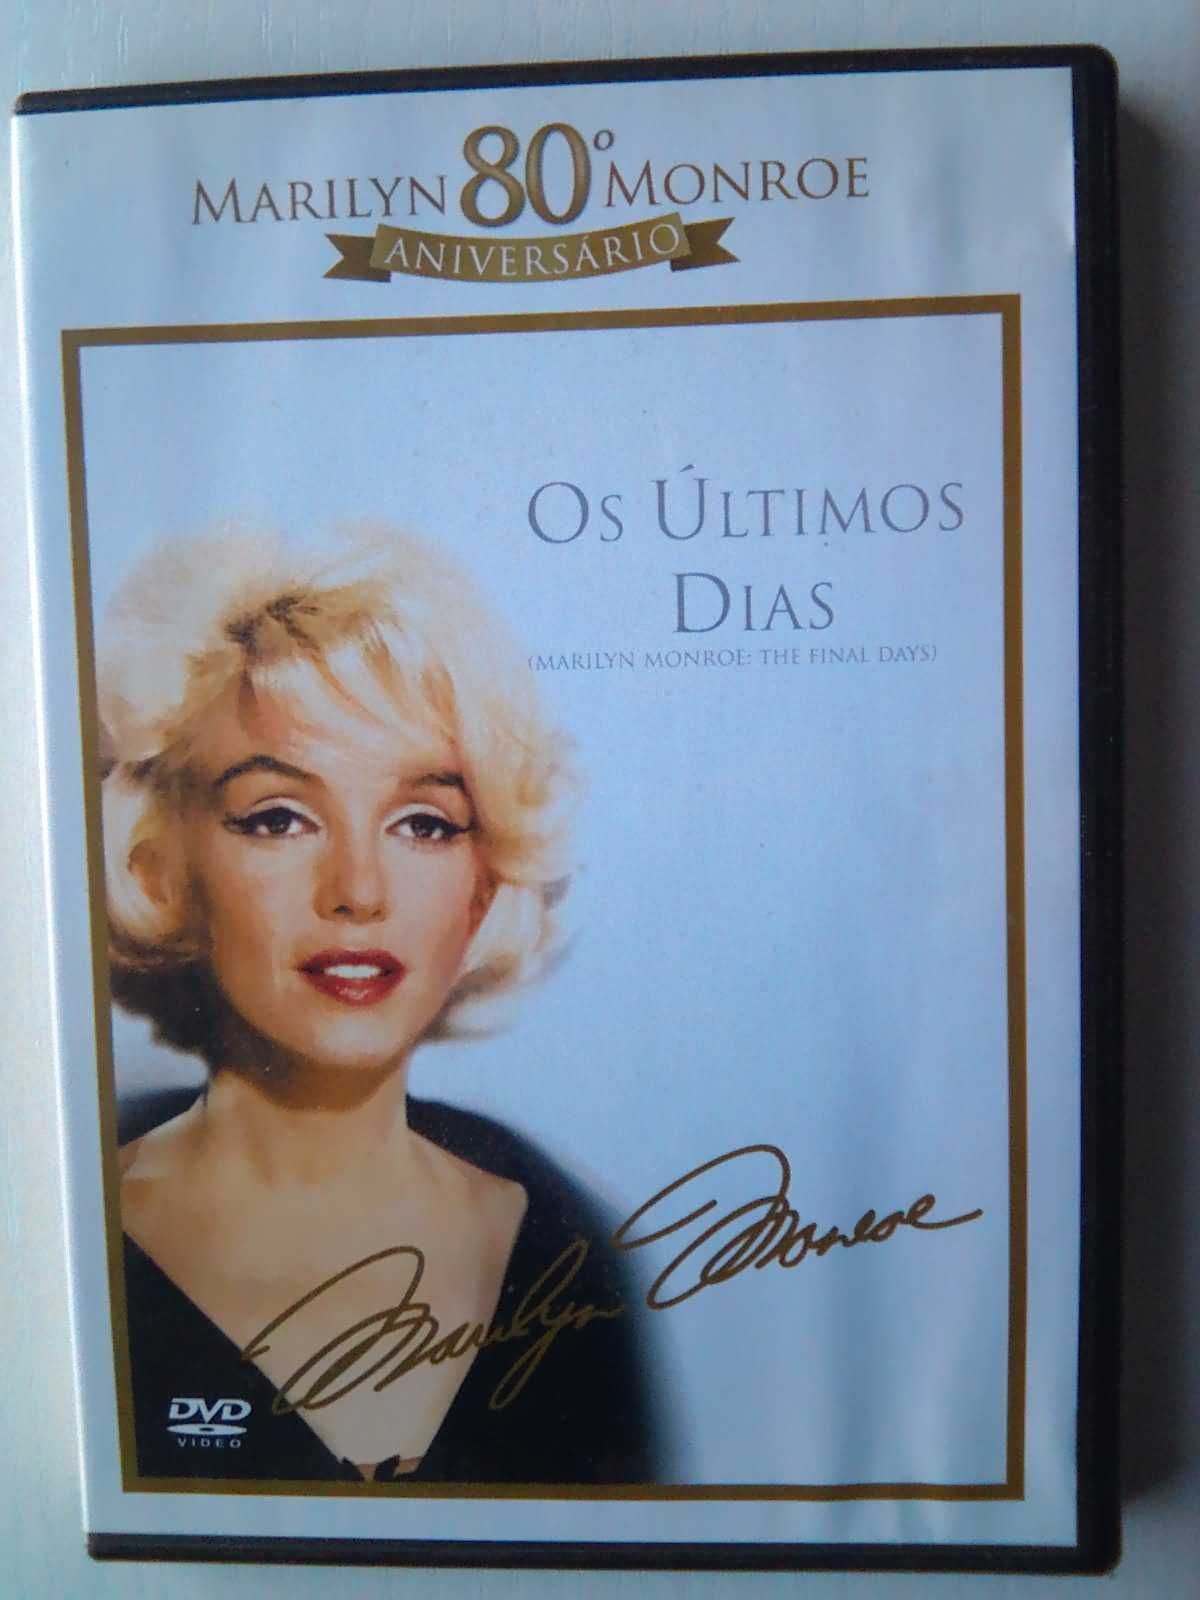 DVD Marilyn Monroe Os Últimos dias.